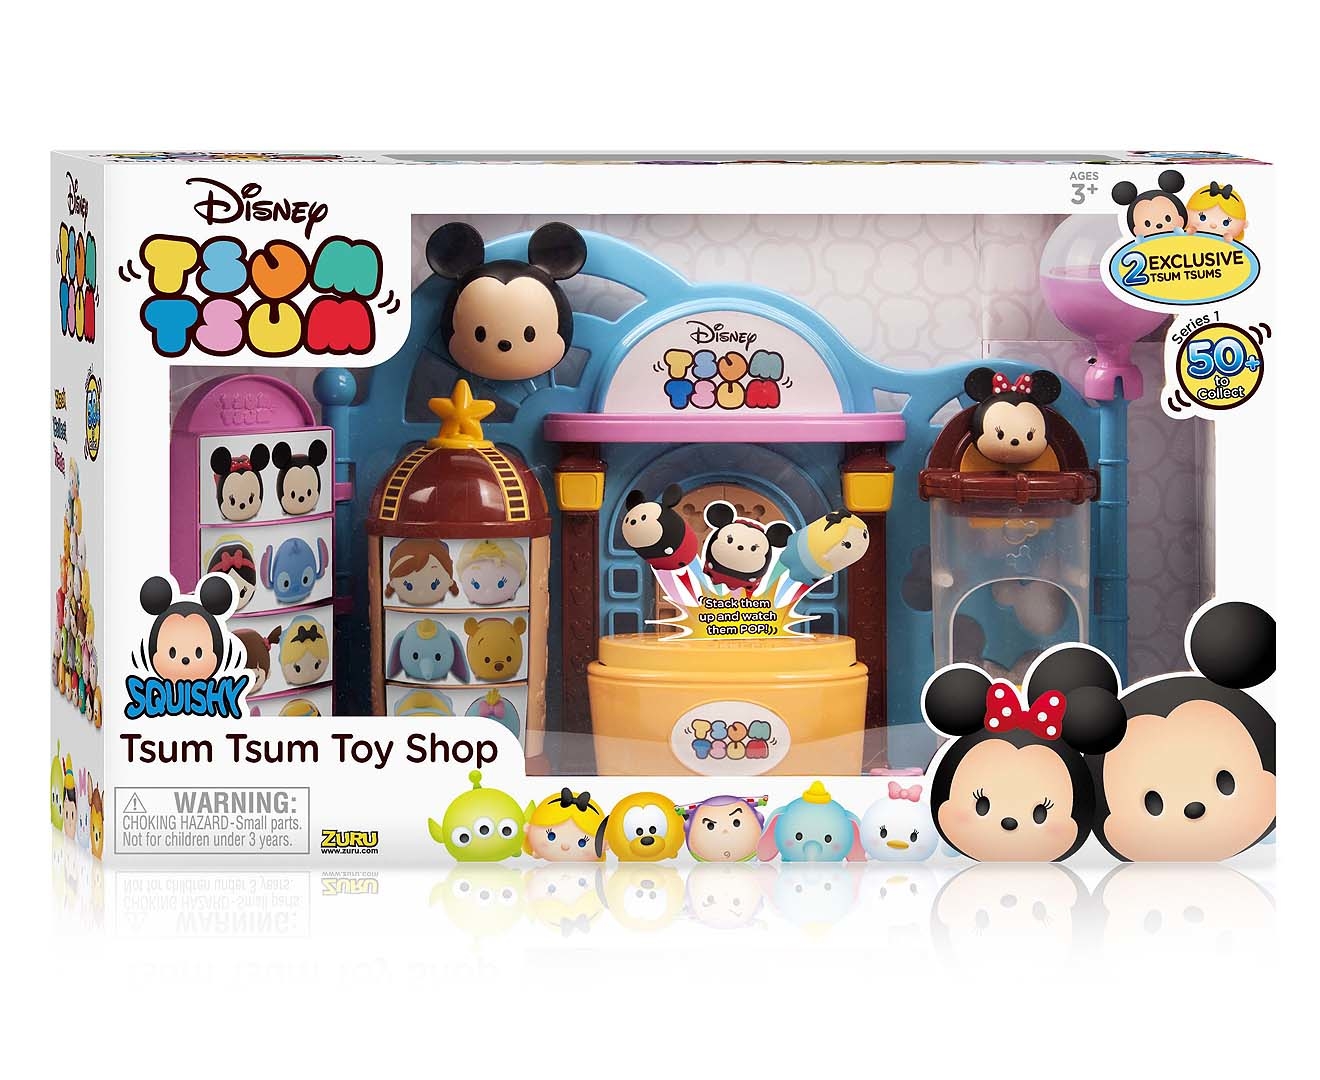 Zuru Disney Tsum Tsum Squishies Toy Shop Playset